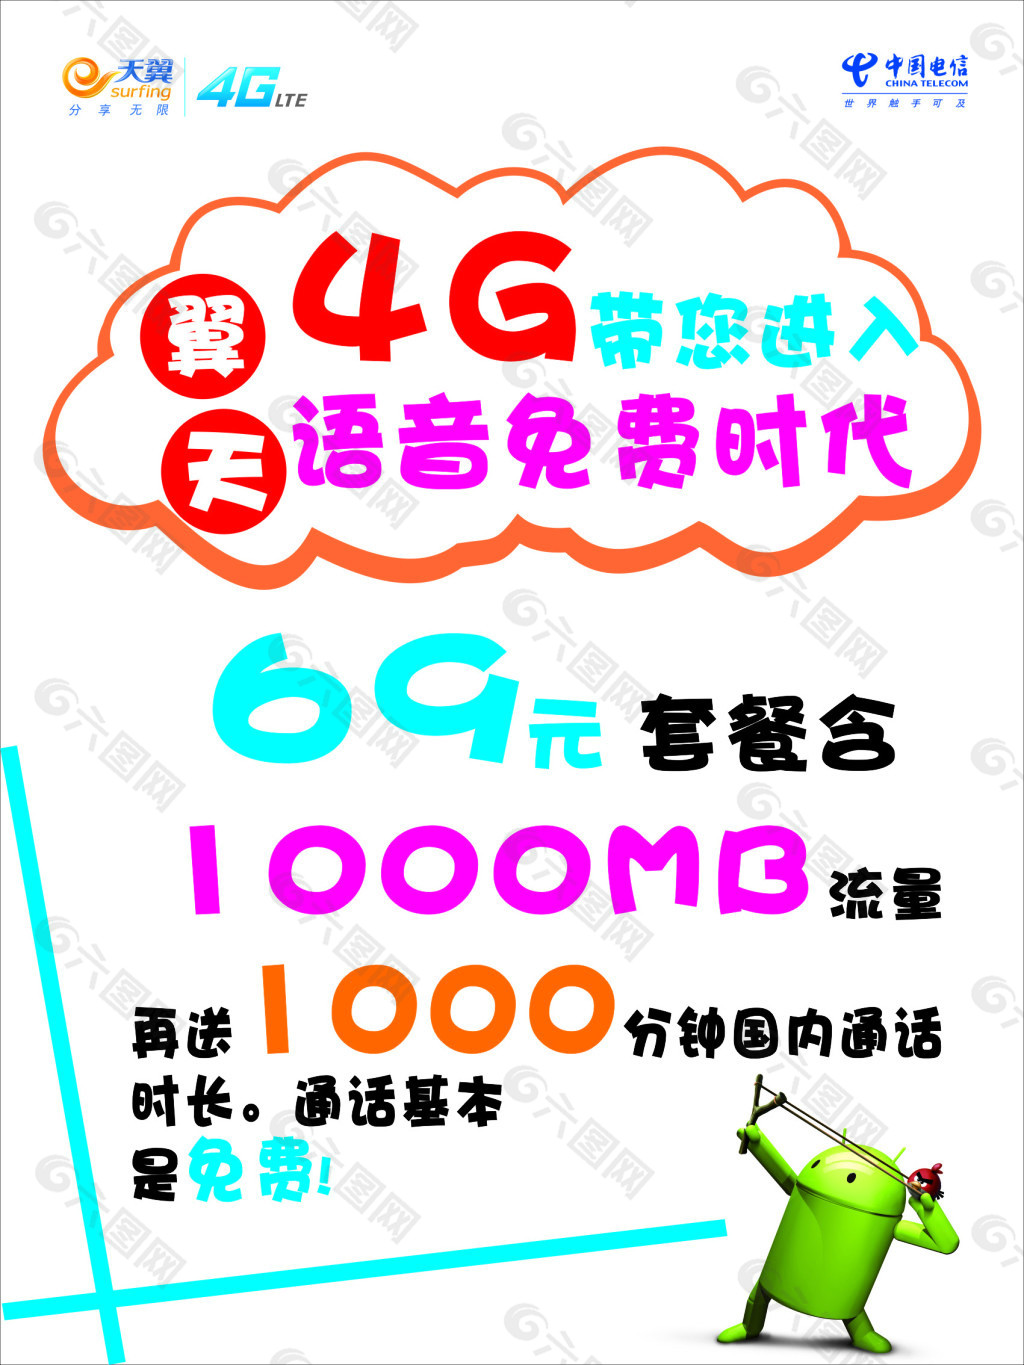 中国电信天翼4g宣传图片素材-编号15872652-图行天下